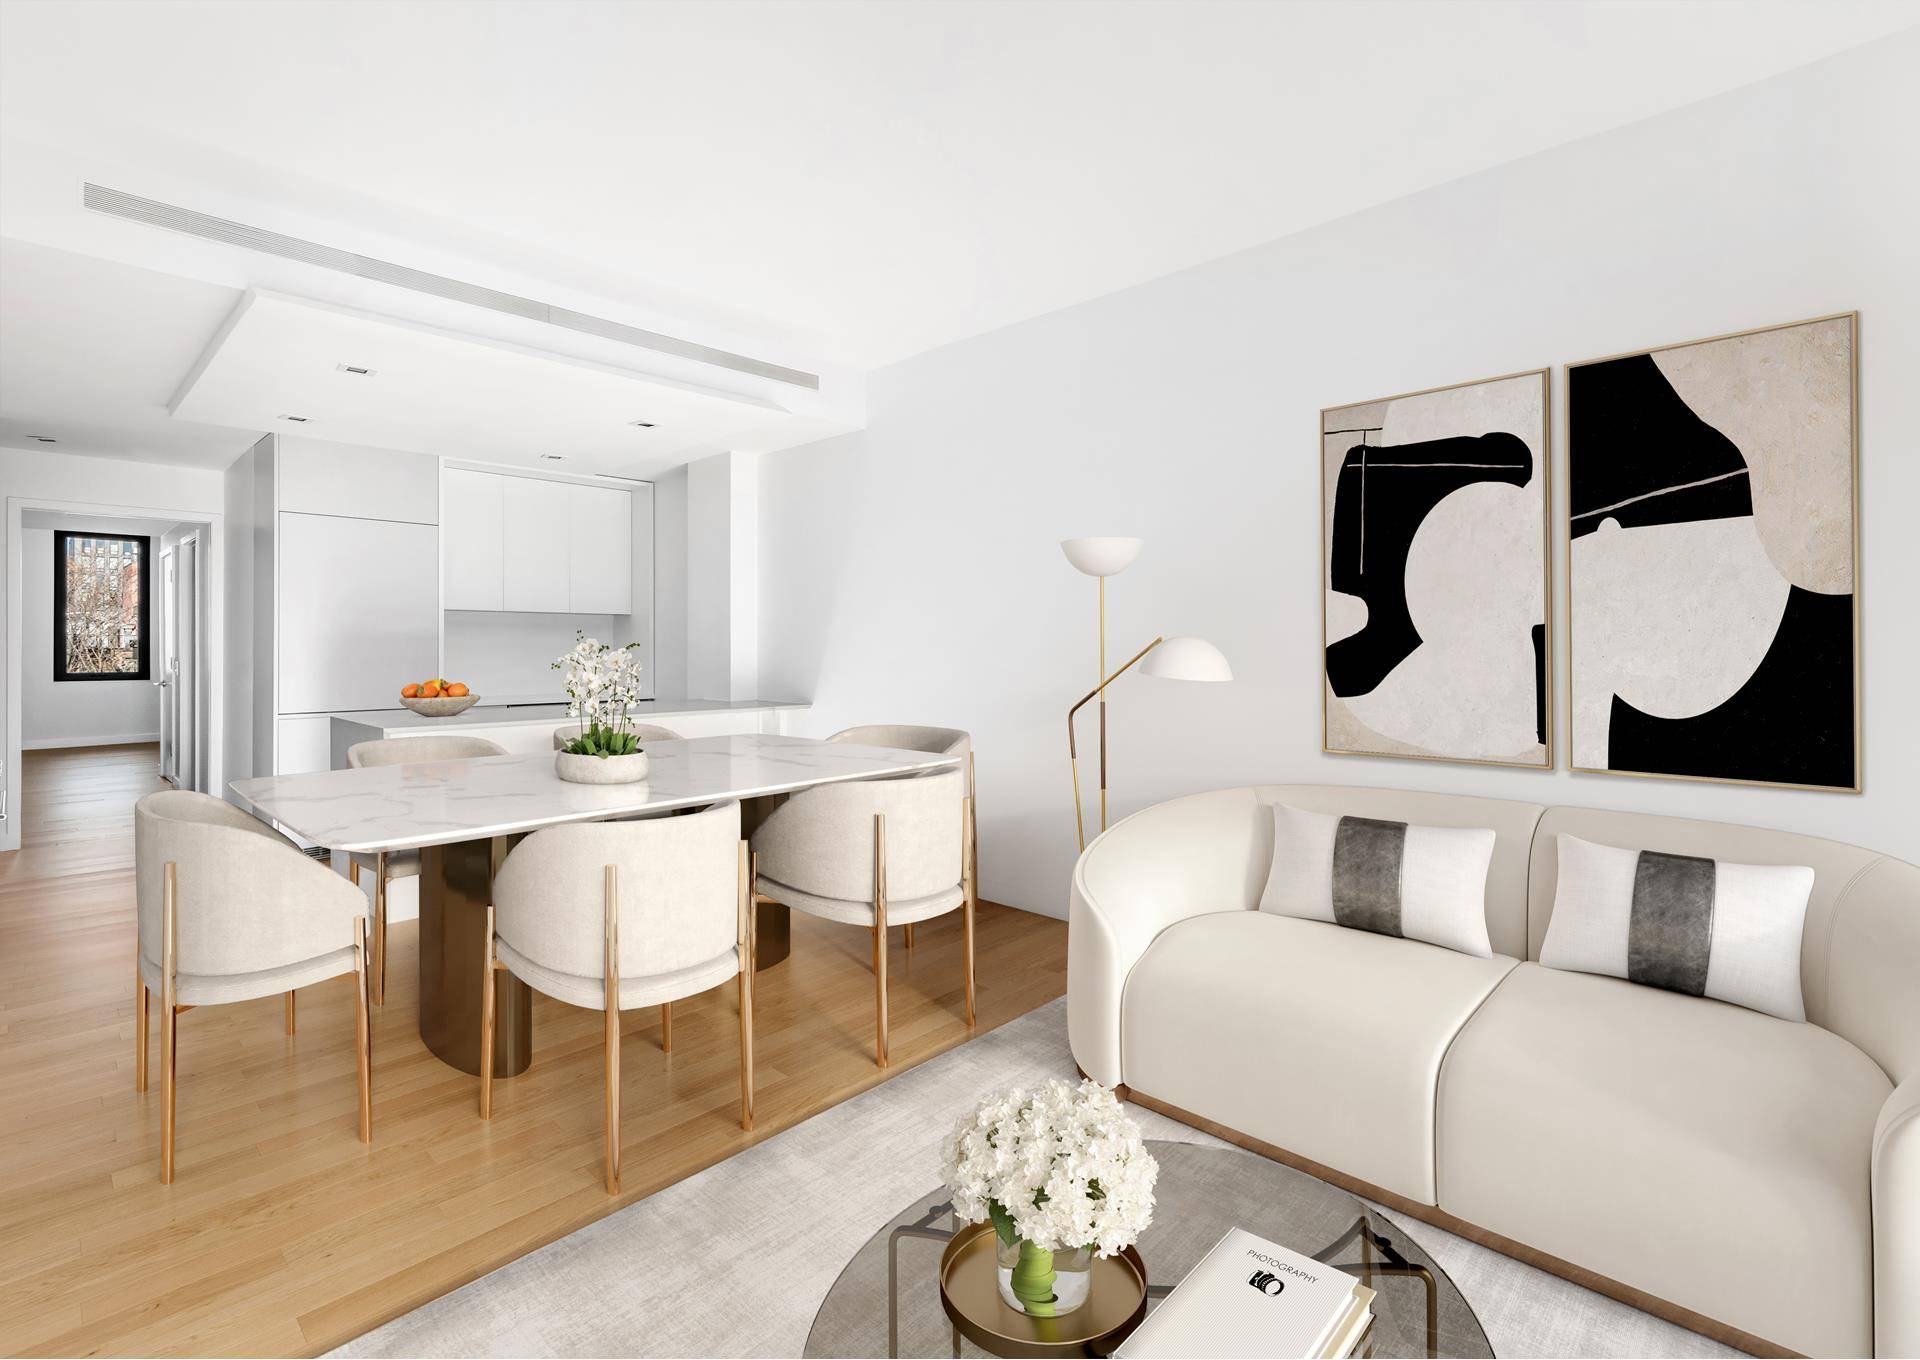 Welcome to 150 Rivington 5G, a luxury 2 bedroom, 2 bathroom loft located in New York's trendiest neighborhood.